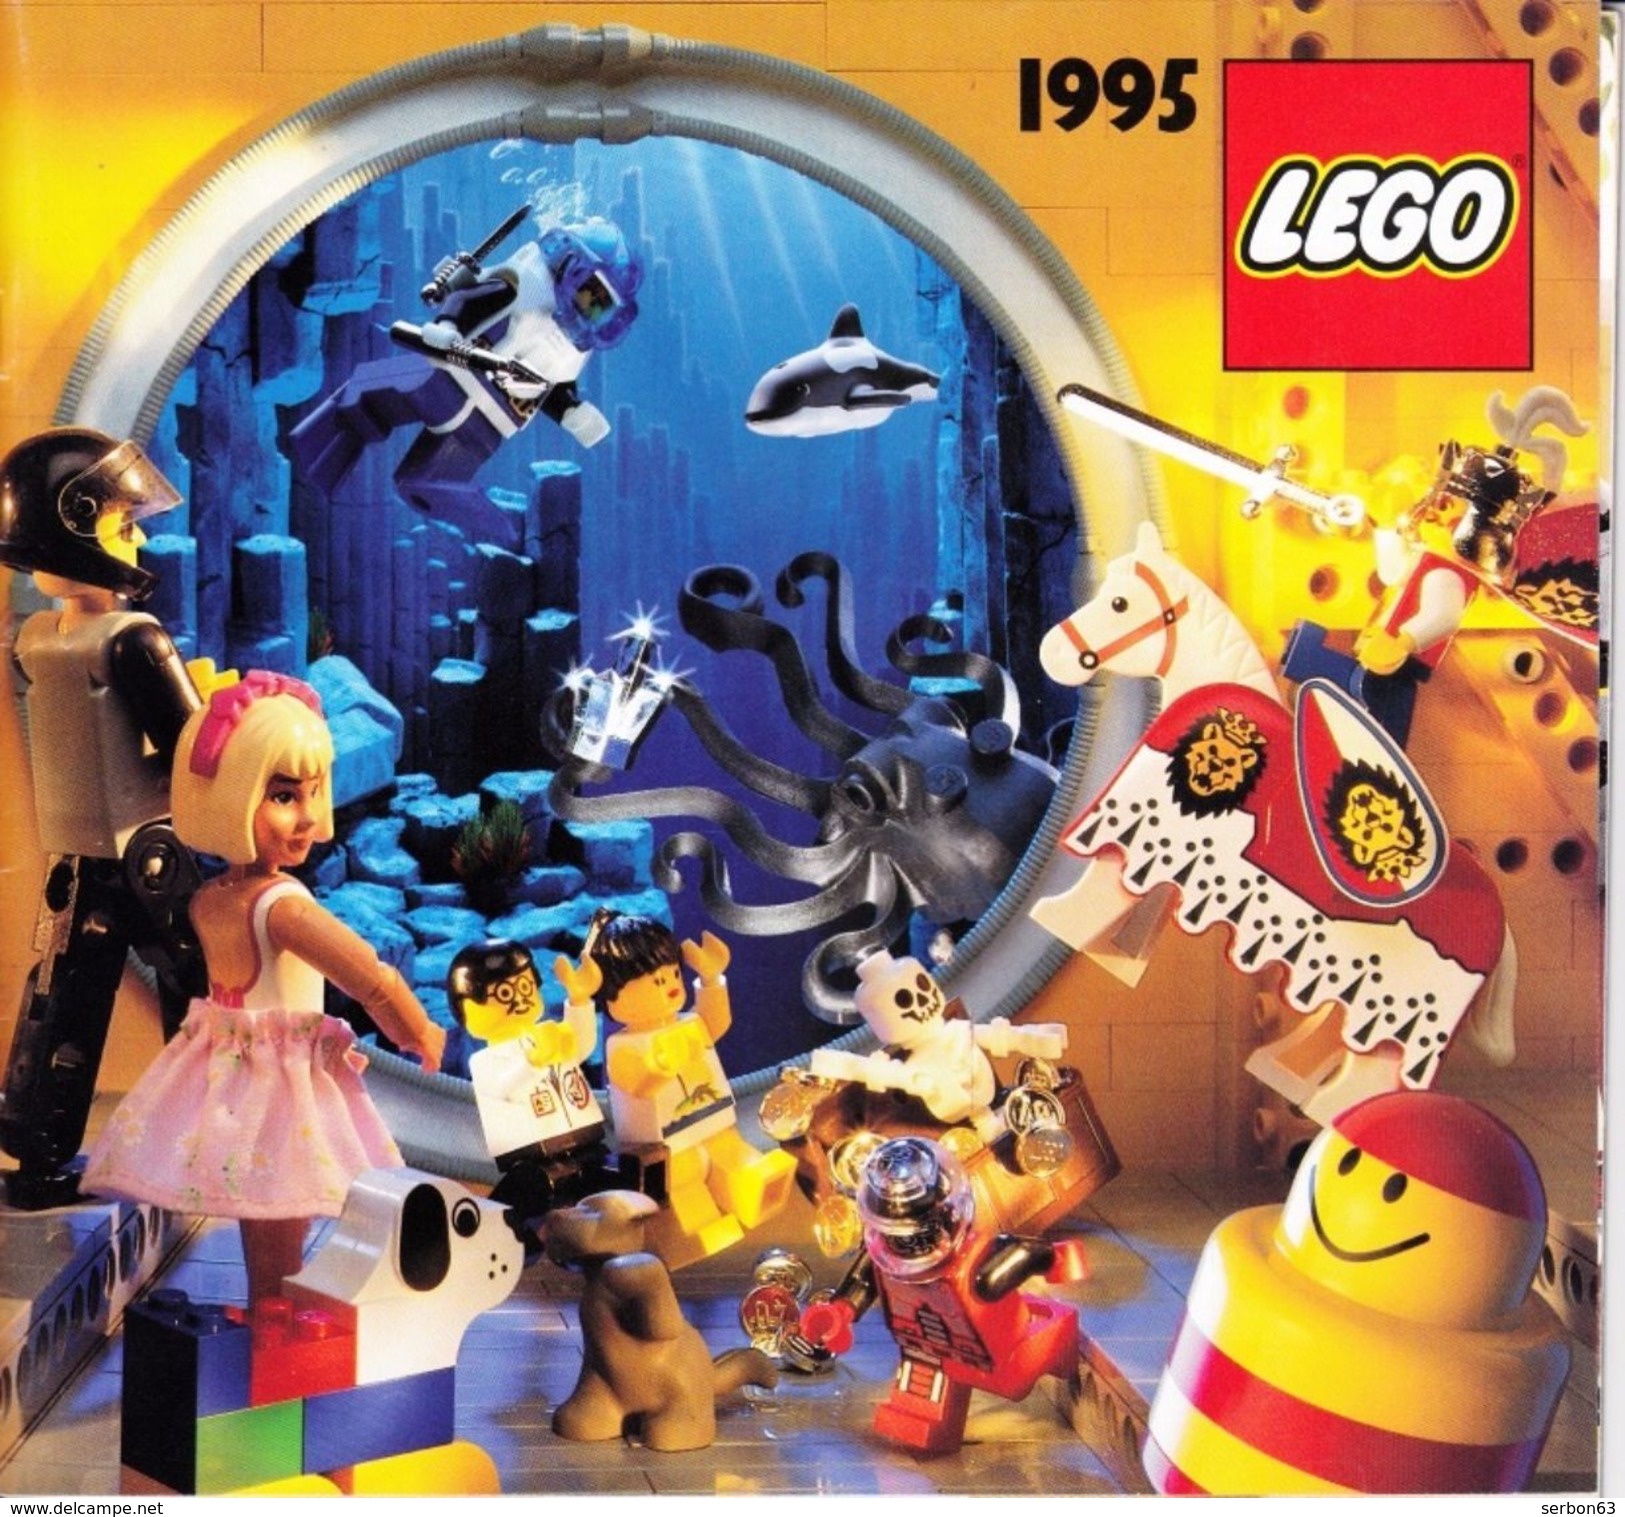 UN CATALOGUE LEGO DE 1995 56 PAGES COULEUR LEGER PLI SUR LA DE (SUR MON SITE Serbon63 DES MILLIERS D'ARTICLES EN VENTES) - Catalogi